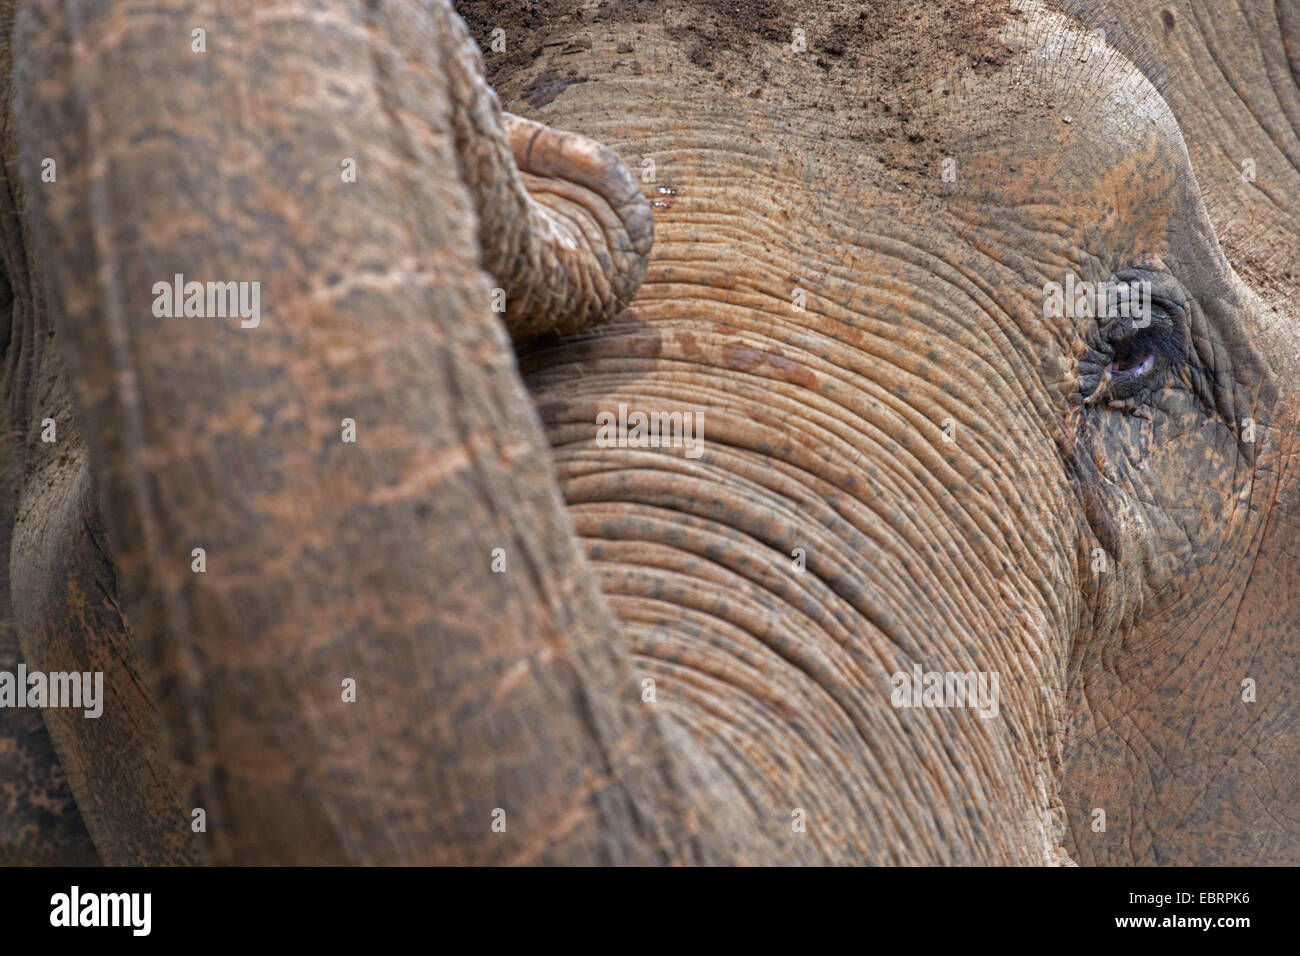 L'éléphant d'Asie, l'éléphant d'Asie (Elephas maximus), portrait, Thaïlande, Chiang Mai Banque D'Images